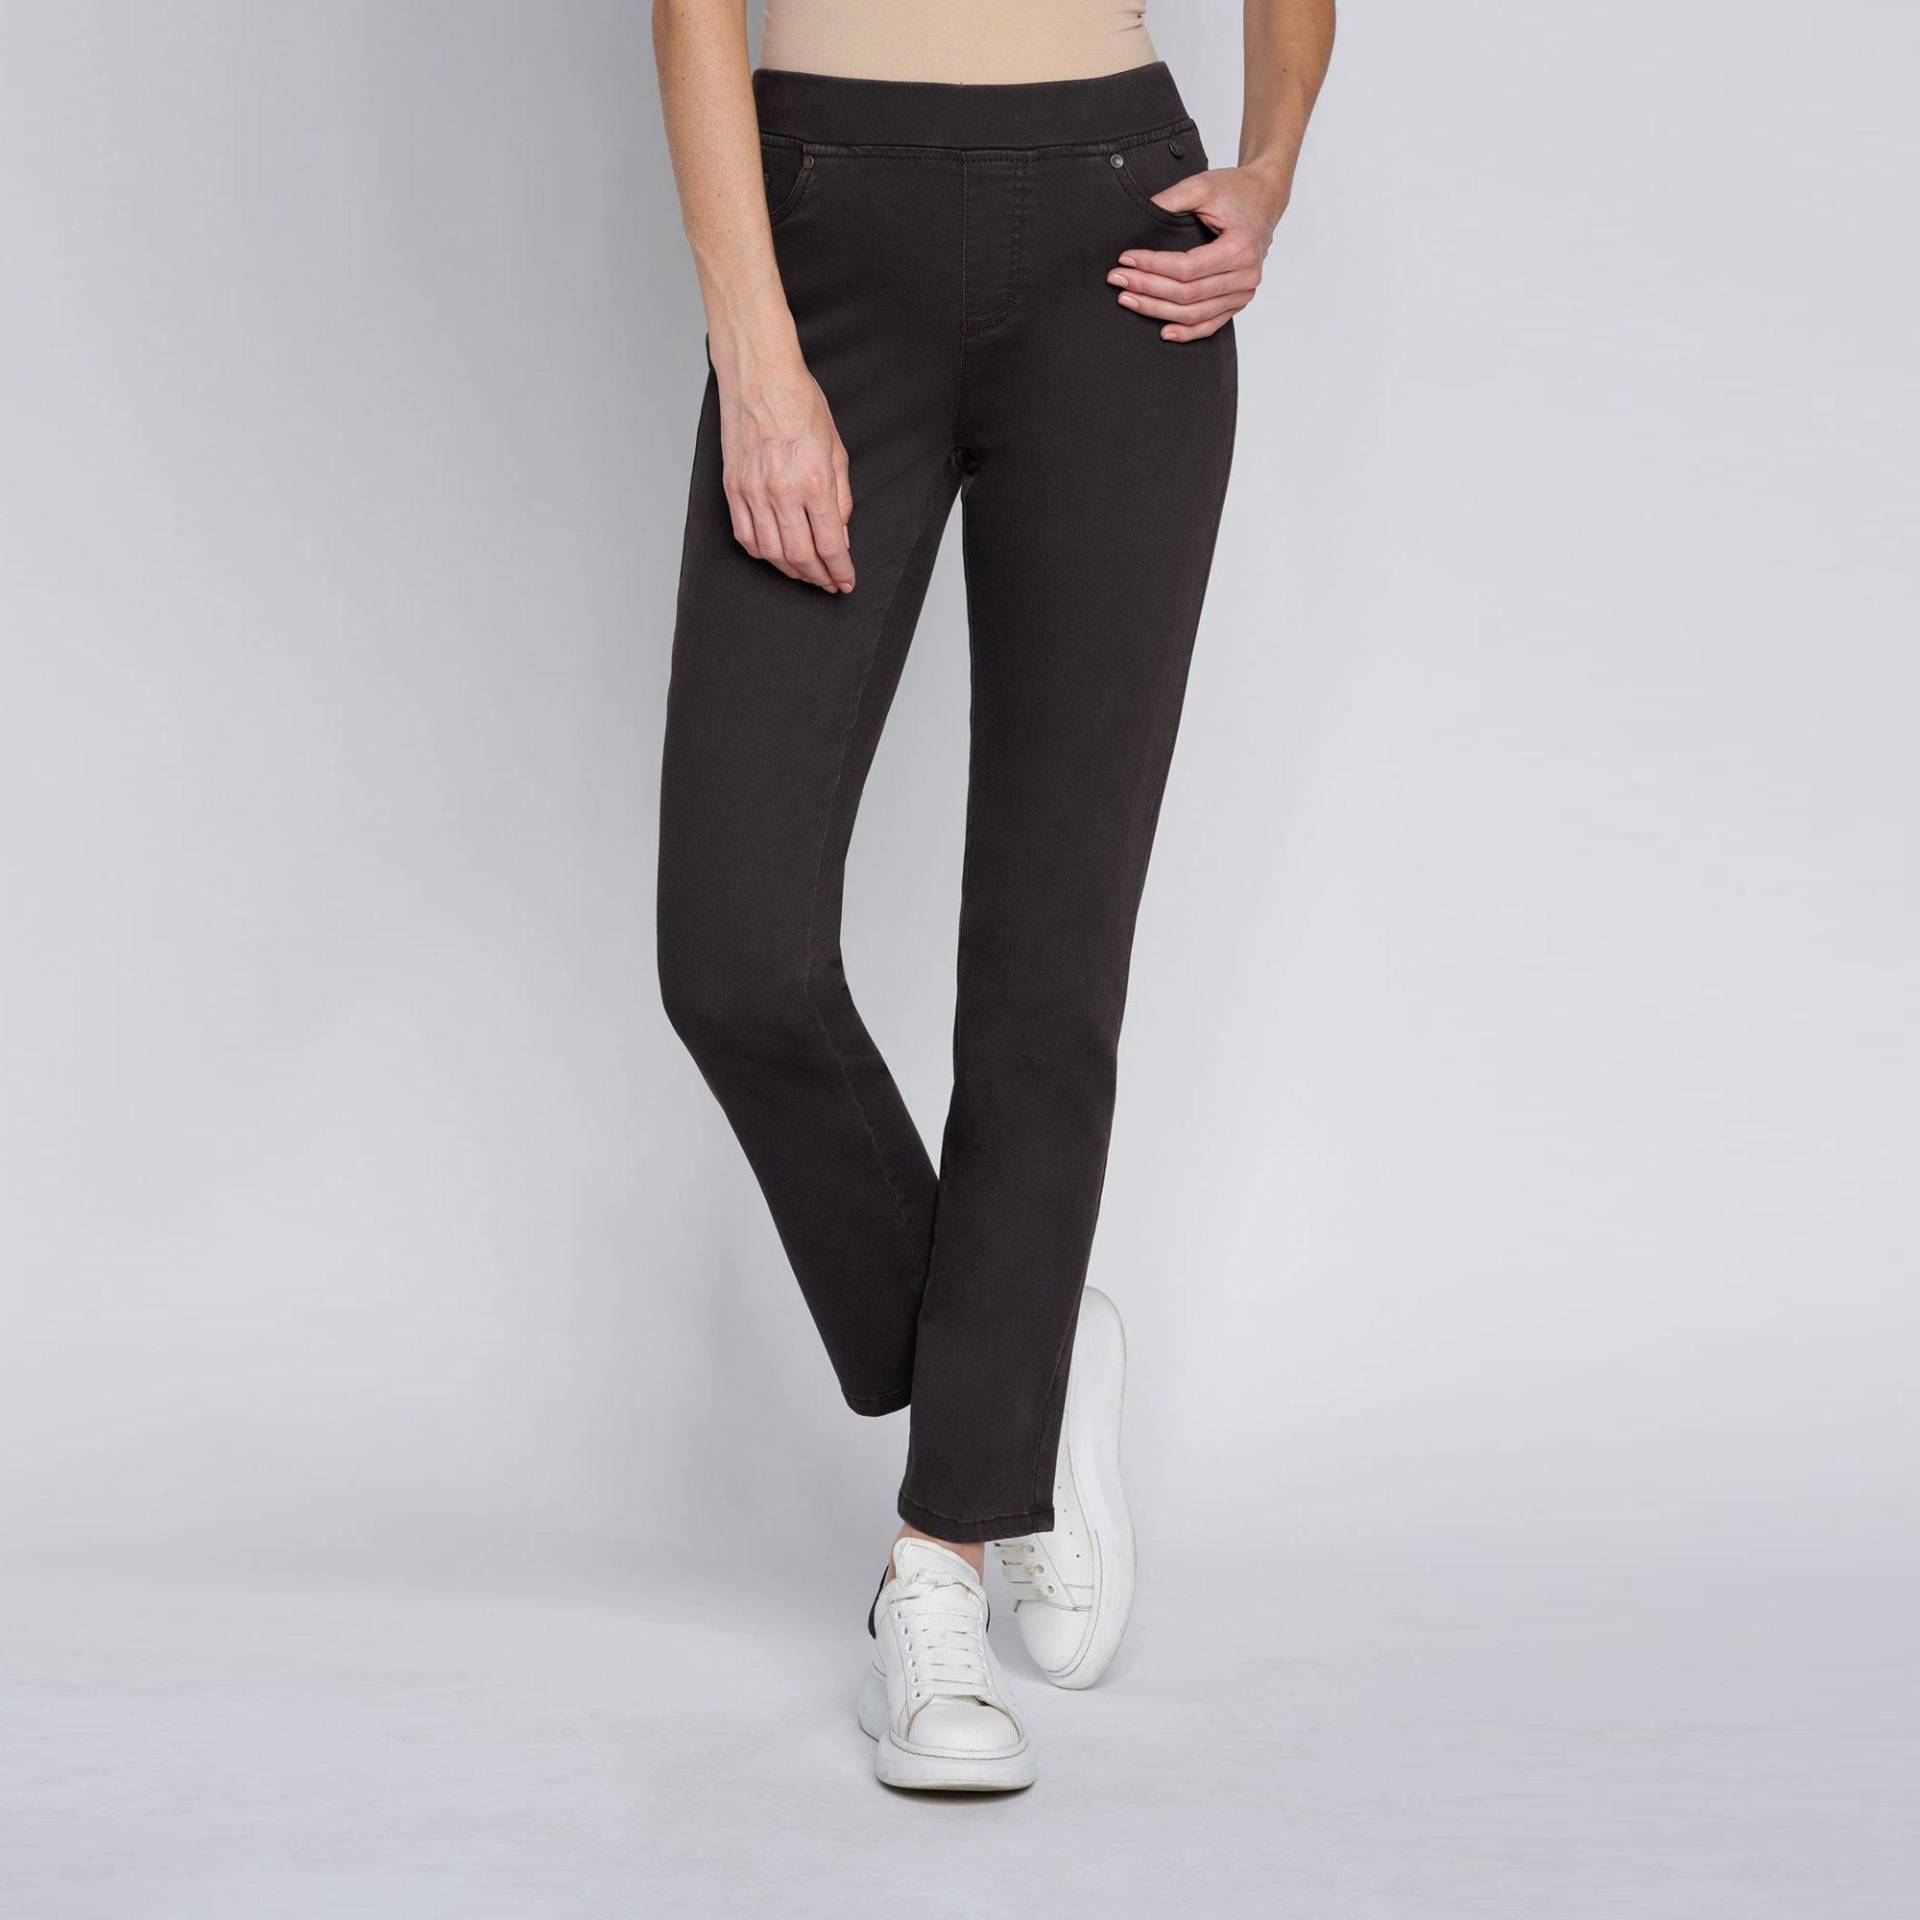 Jeans, Slim Fit Damen Black 36 von ANNA MONTANA